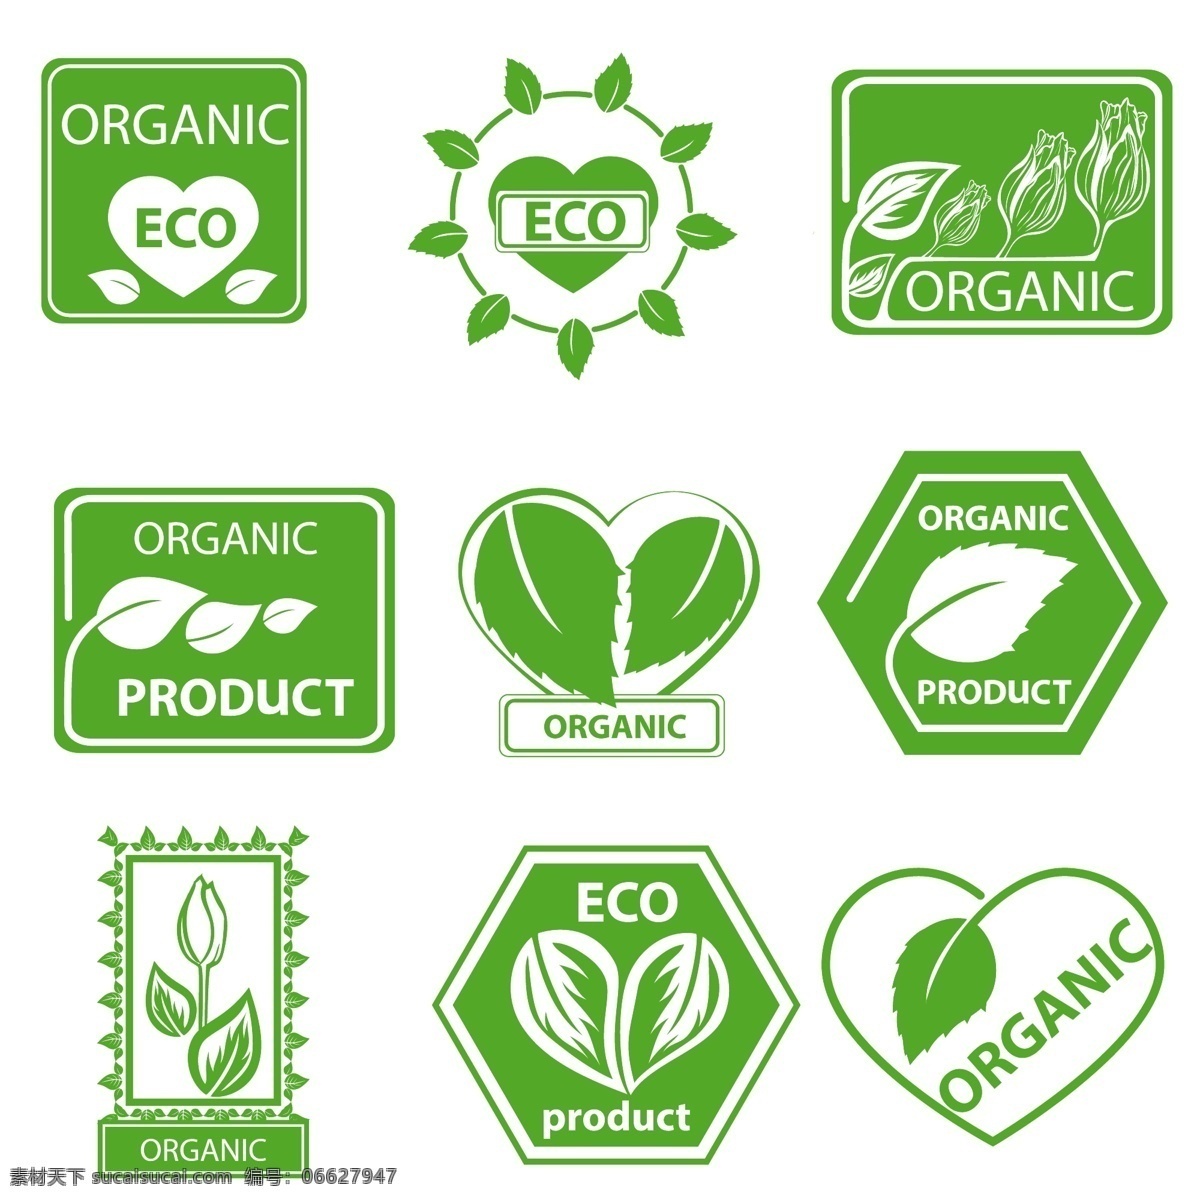 绿色 节能 图标 矢量 节能图标 eco 矢量素材 植物